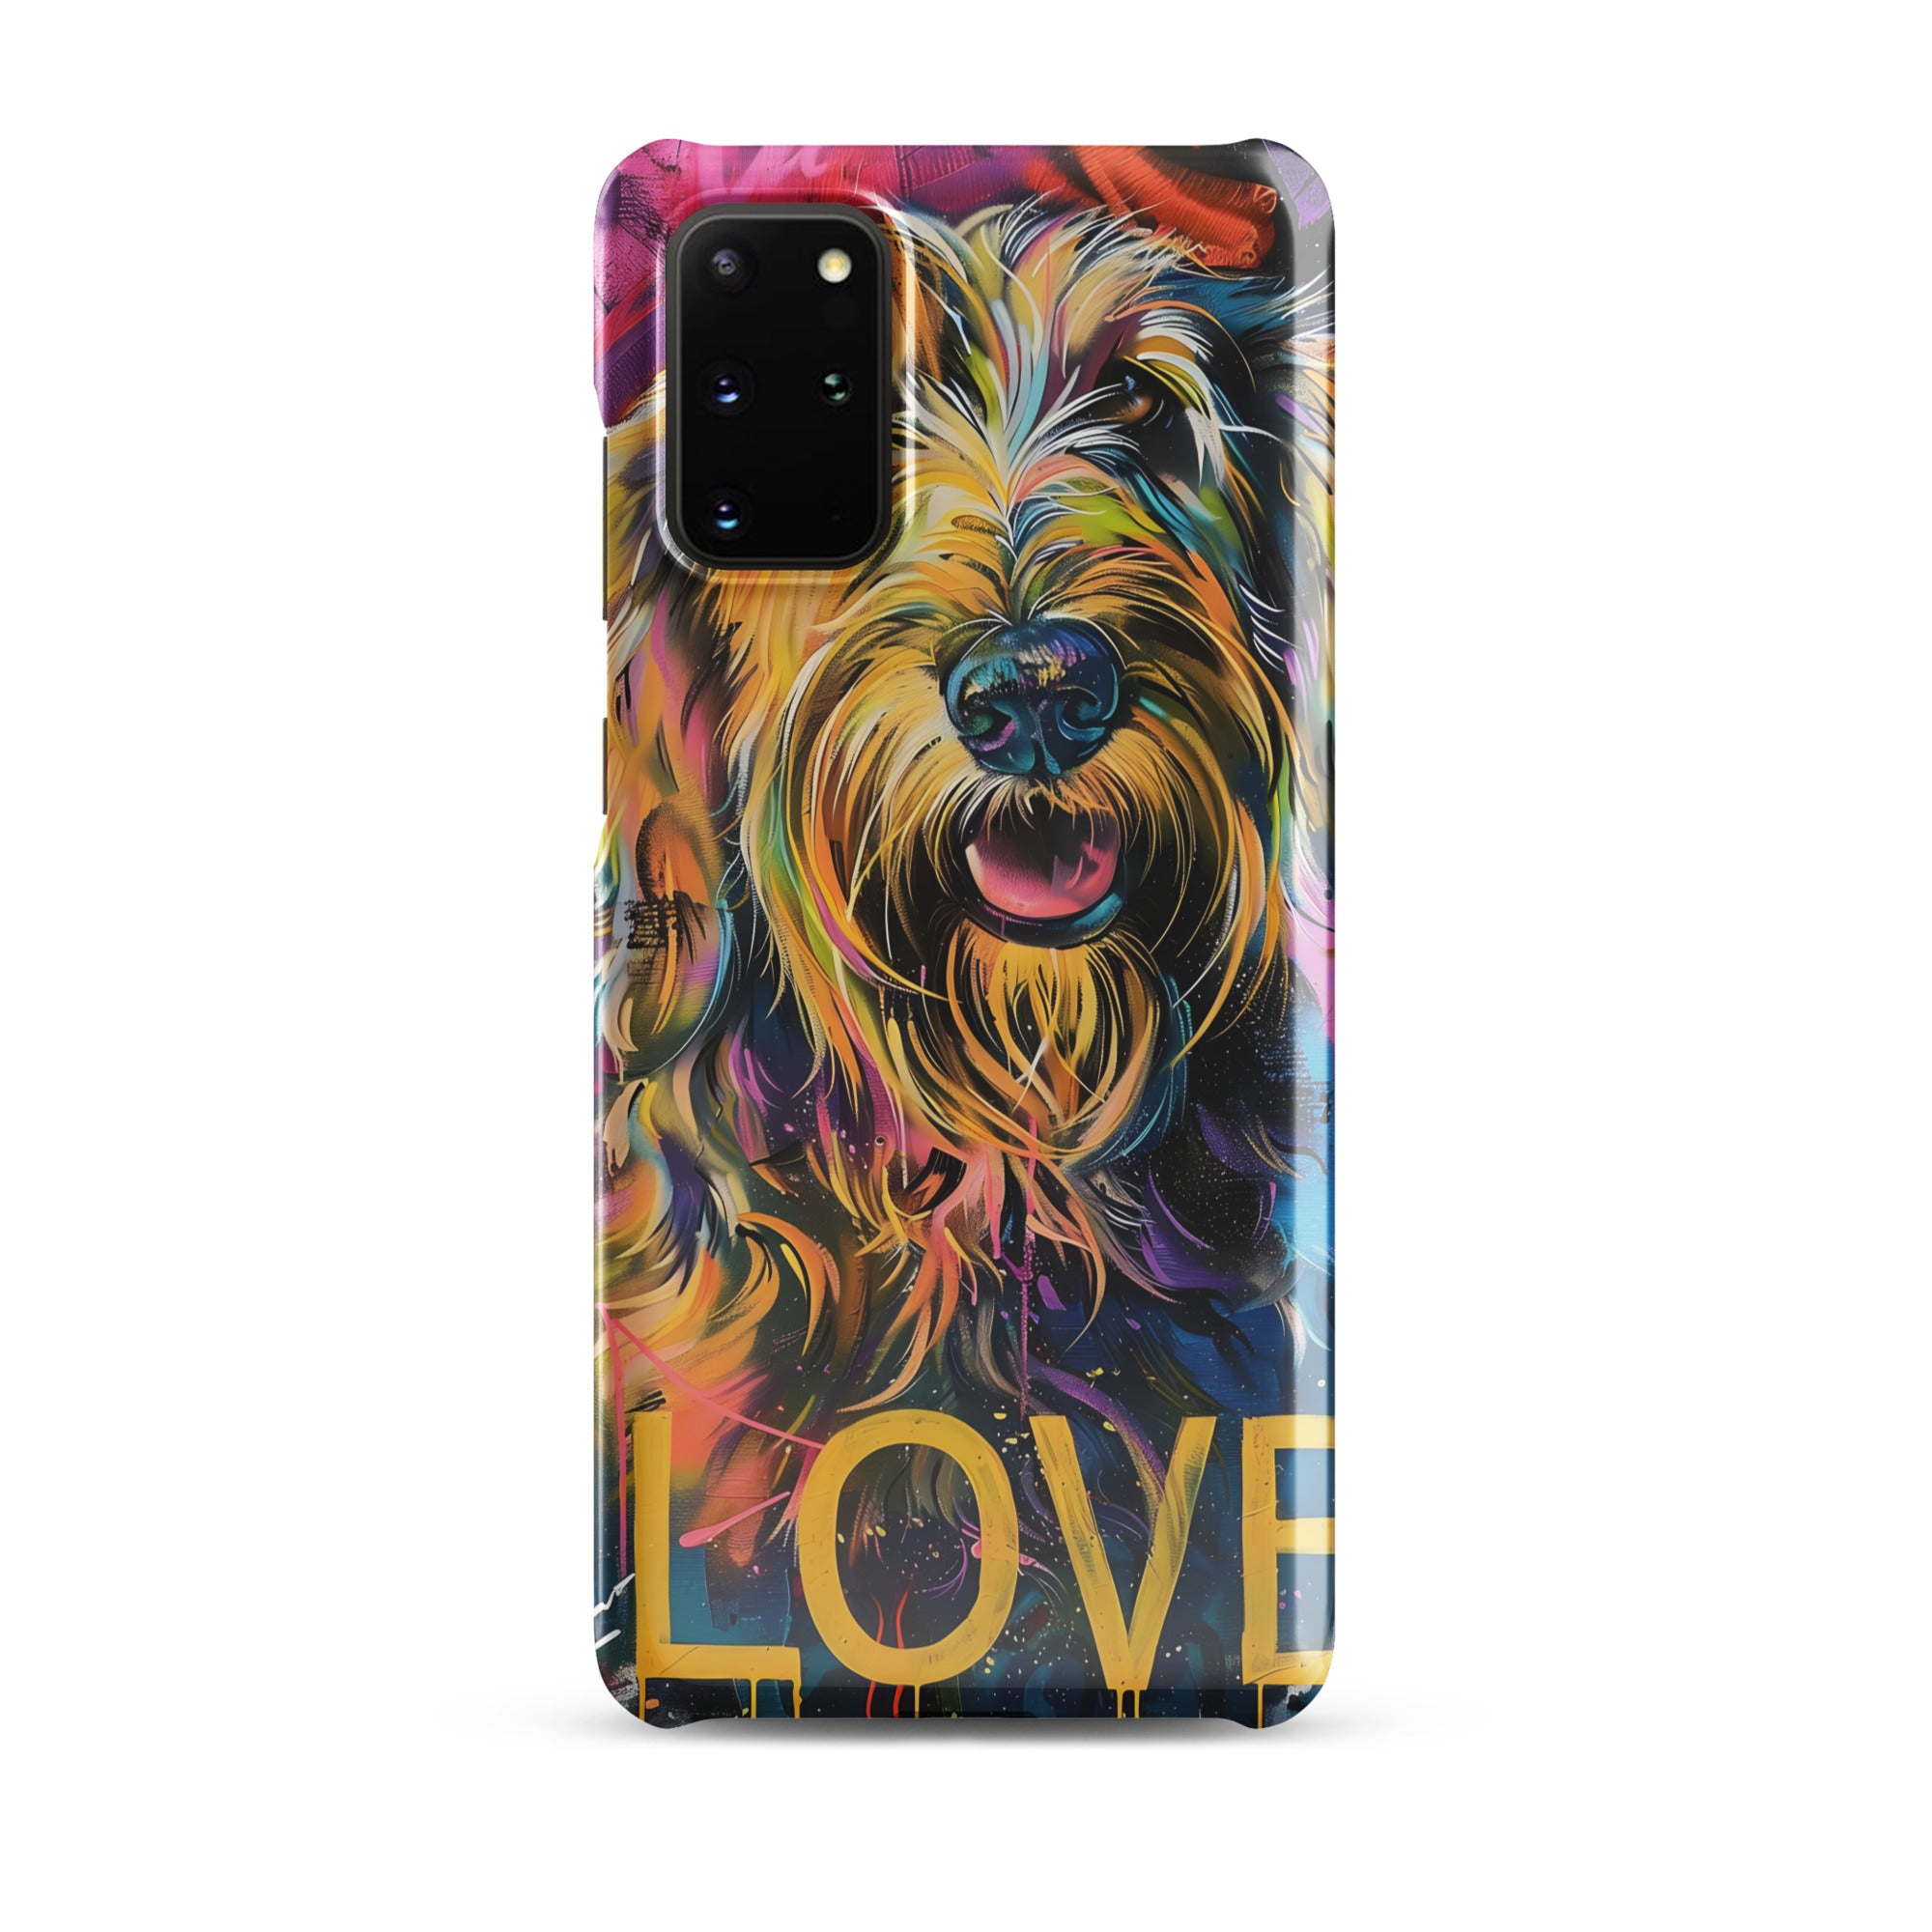 Otterhound Snap case for Samsung®